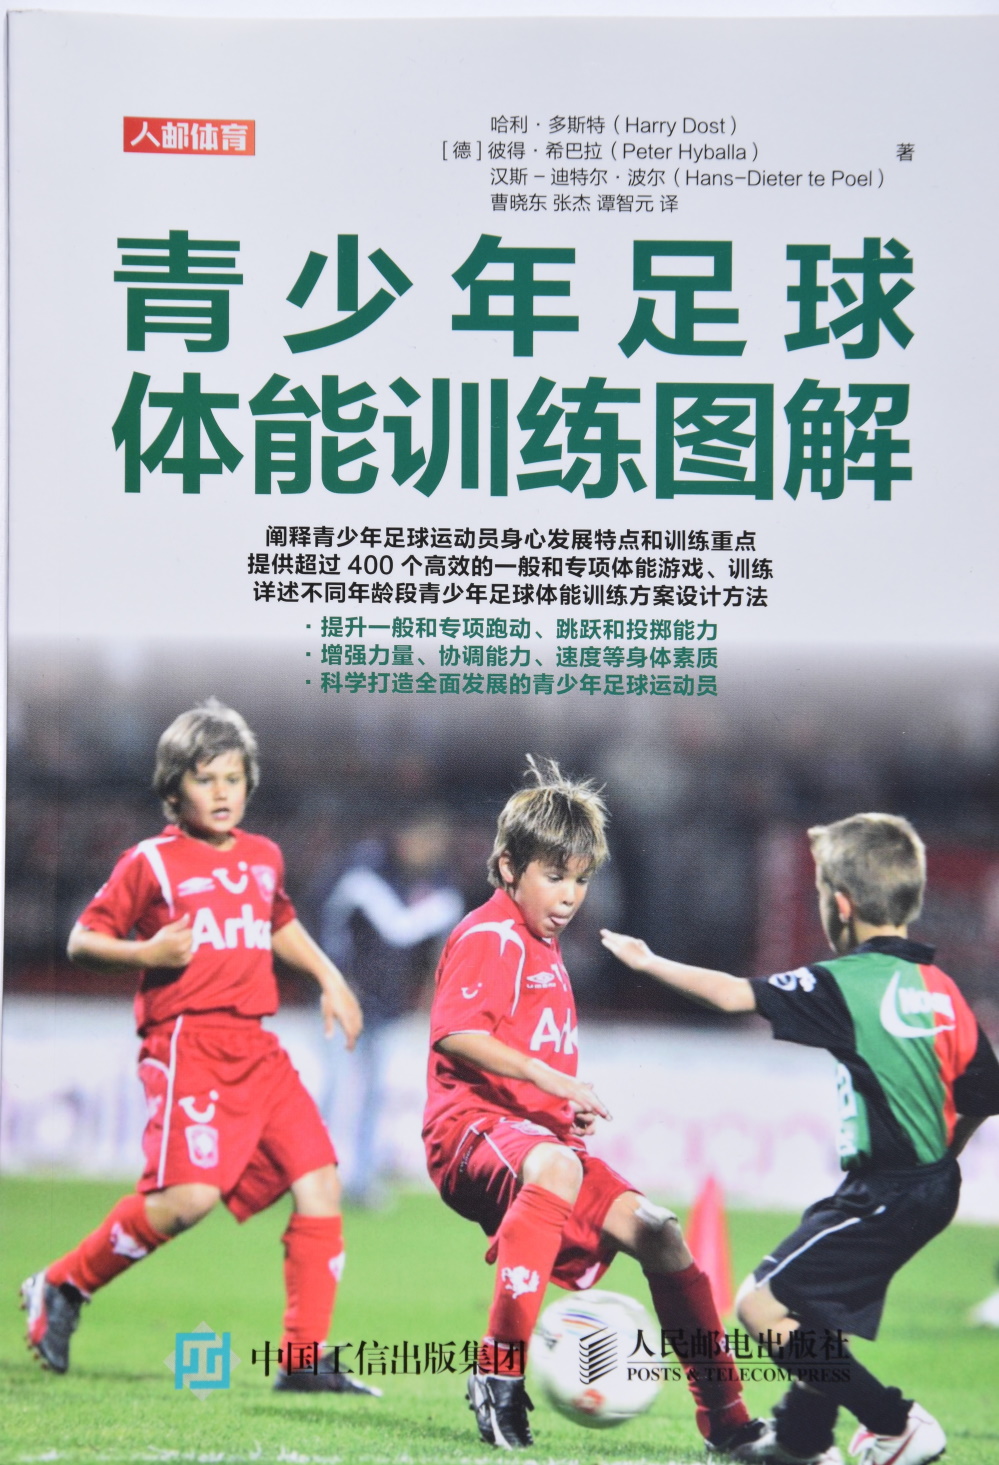 Fußballfitness von heute in Chinesisch - Vorderseite